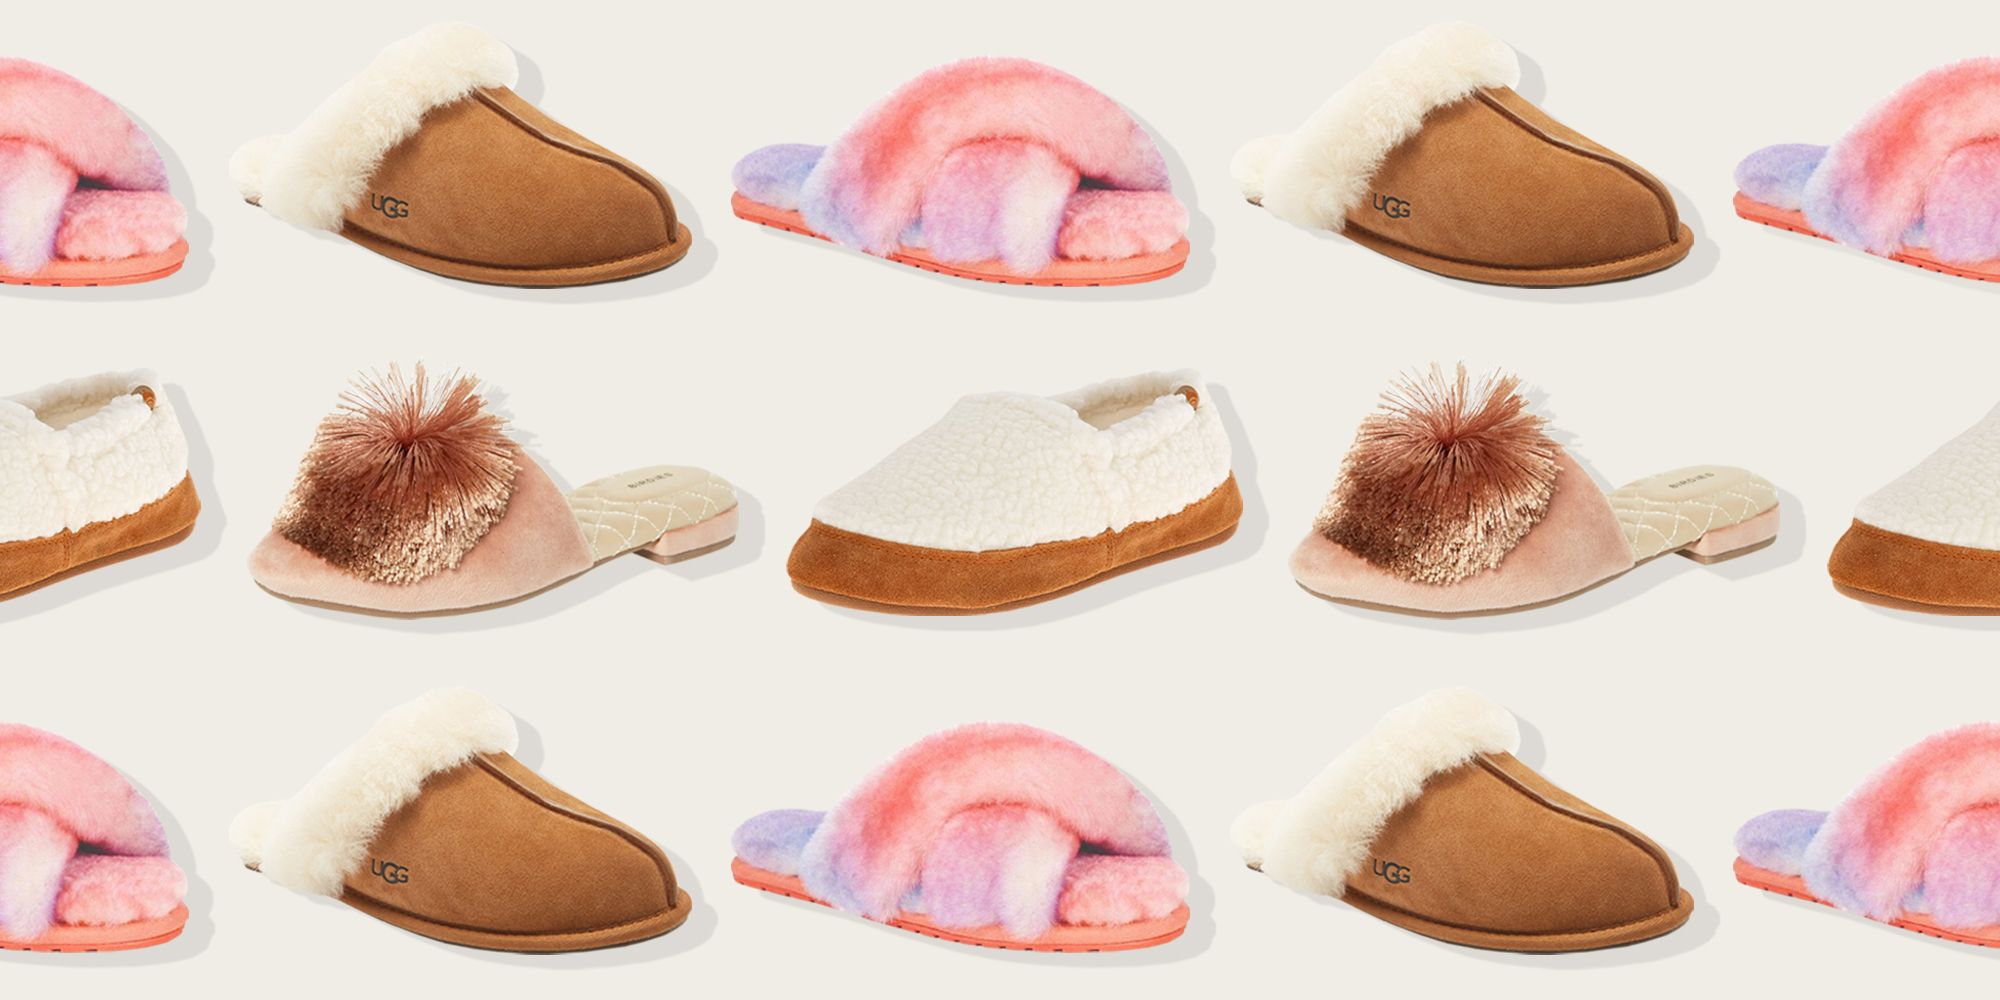 women's warmest slippers